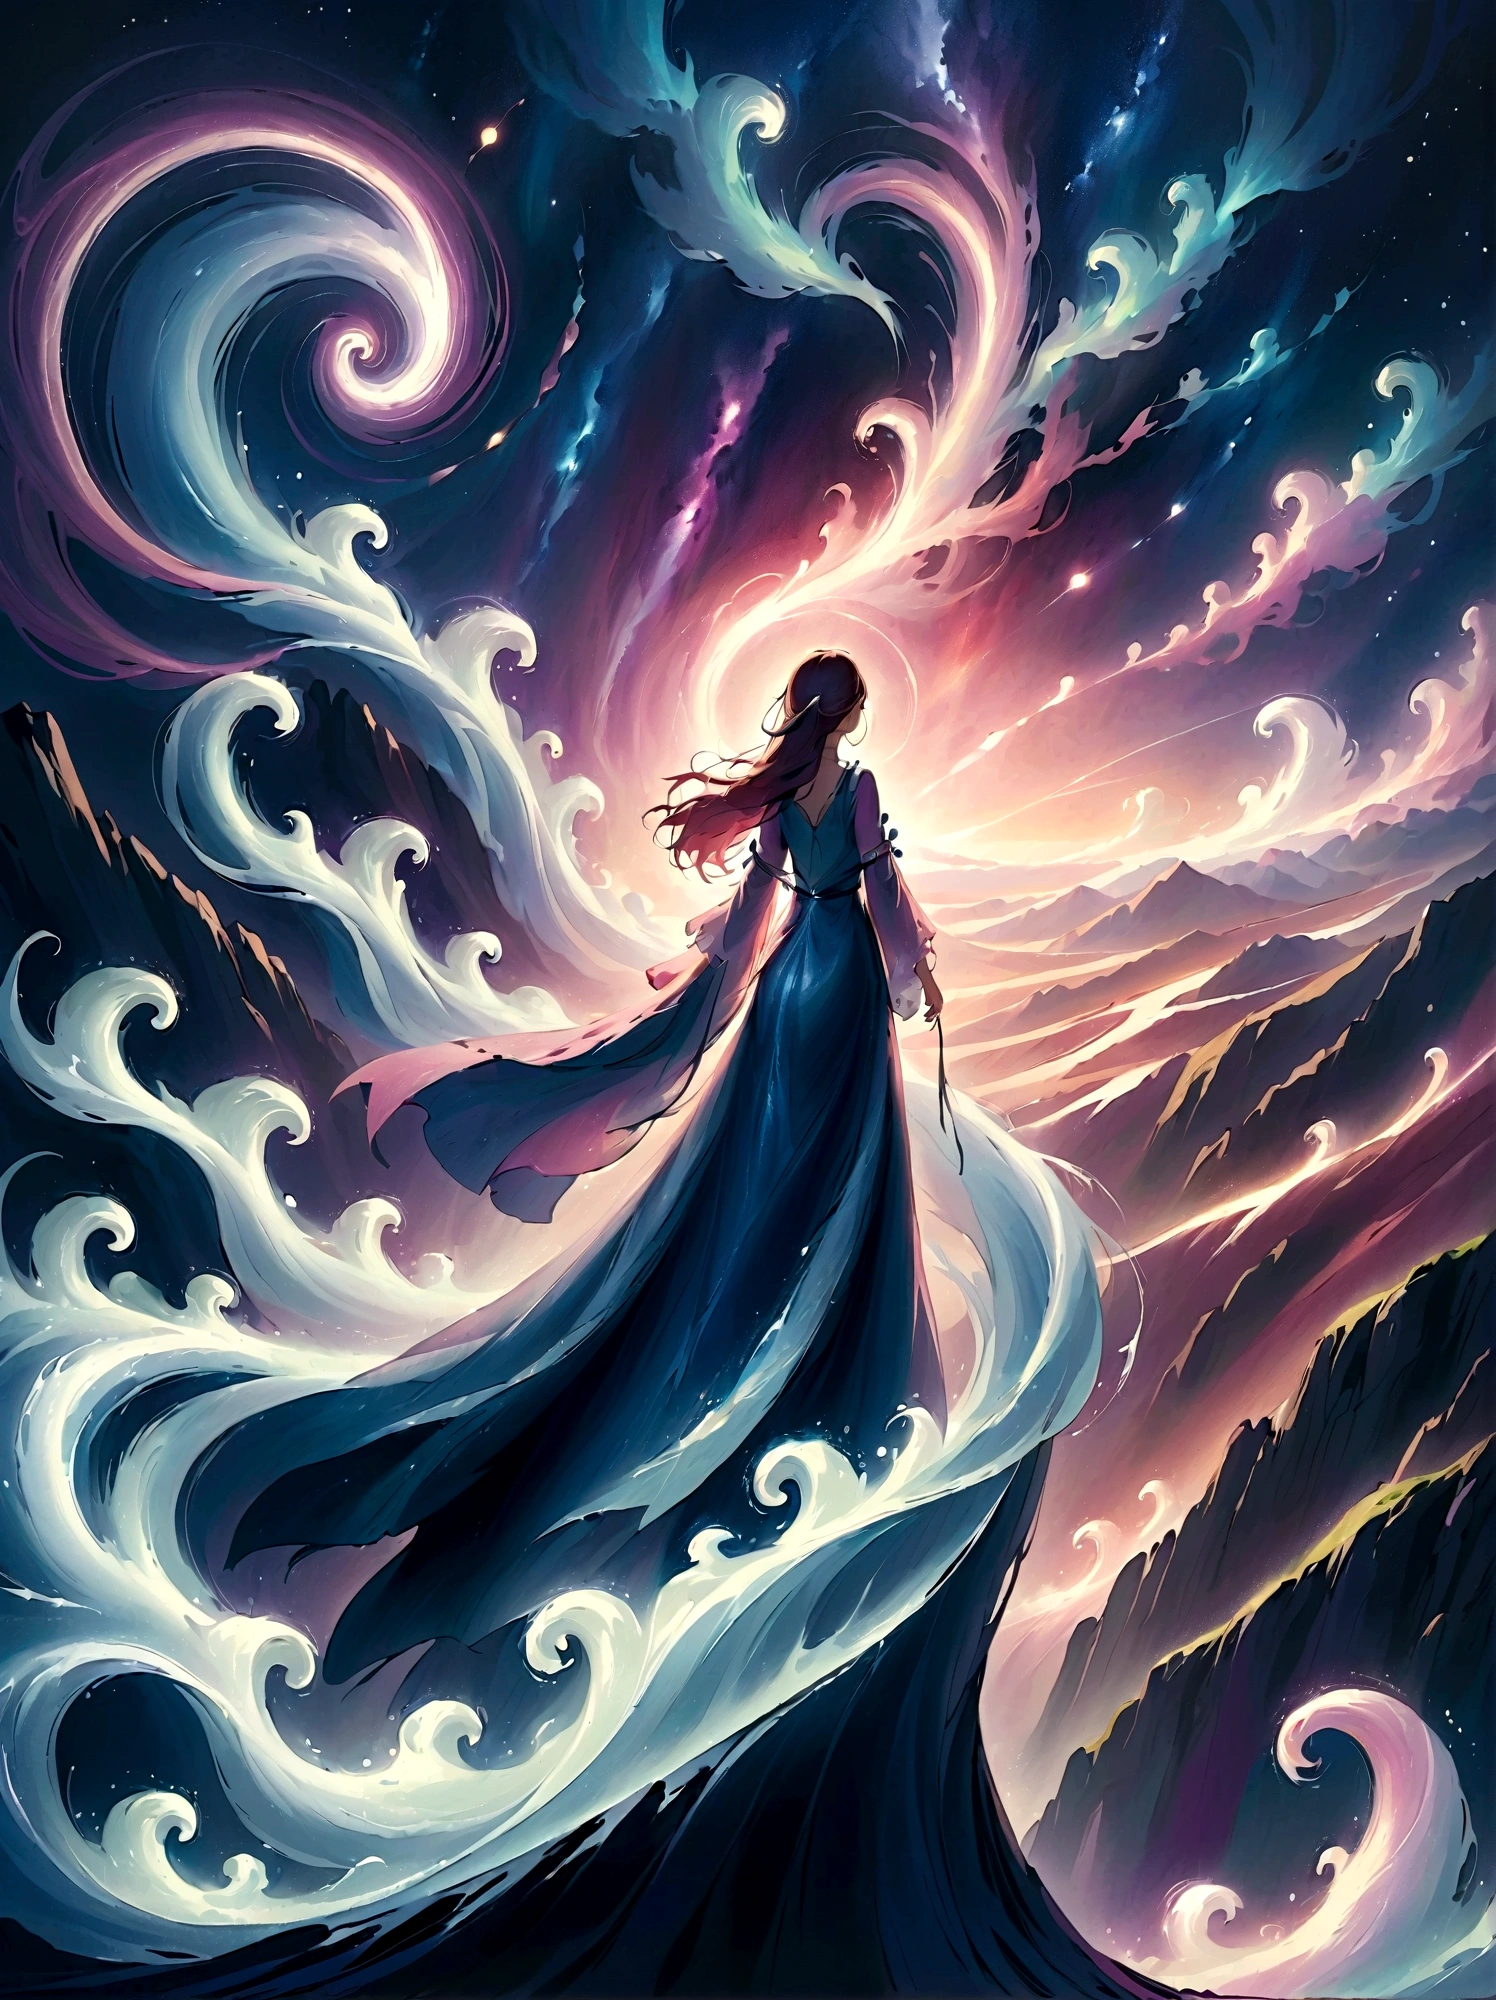 (從後面看)，一個人站在懸崖上，在梦幻般的, 朦朧的風景，(女孩&#39;完美的背部)，(背对观众)，被宇宙能量漩渦包圍，穿着飘逸长袍的人的背影，与天体气流融合，天空是深紫色和藍色的掛毯，點綴著星星，下面的景色隐约可见连绵起伏的山脉，這一幕是祥和莊嚴的，捕捉宇宙的壮丽本质，一个沉思的身影敬畏地站着